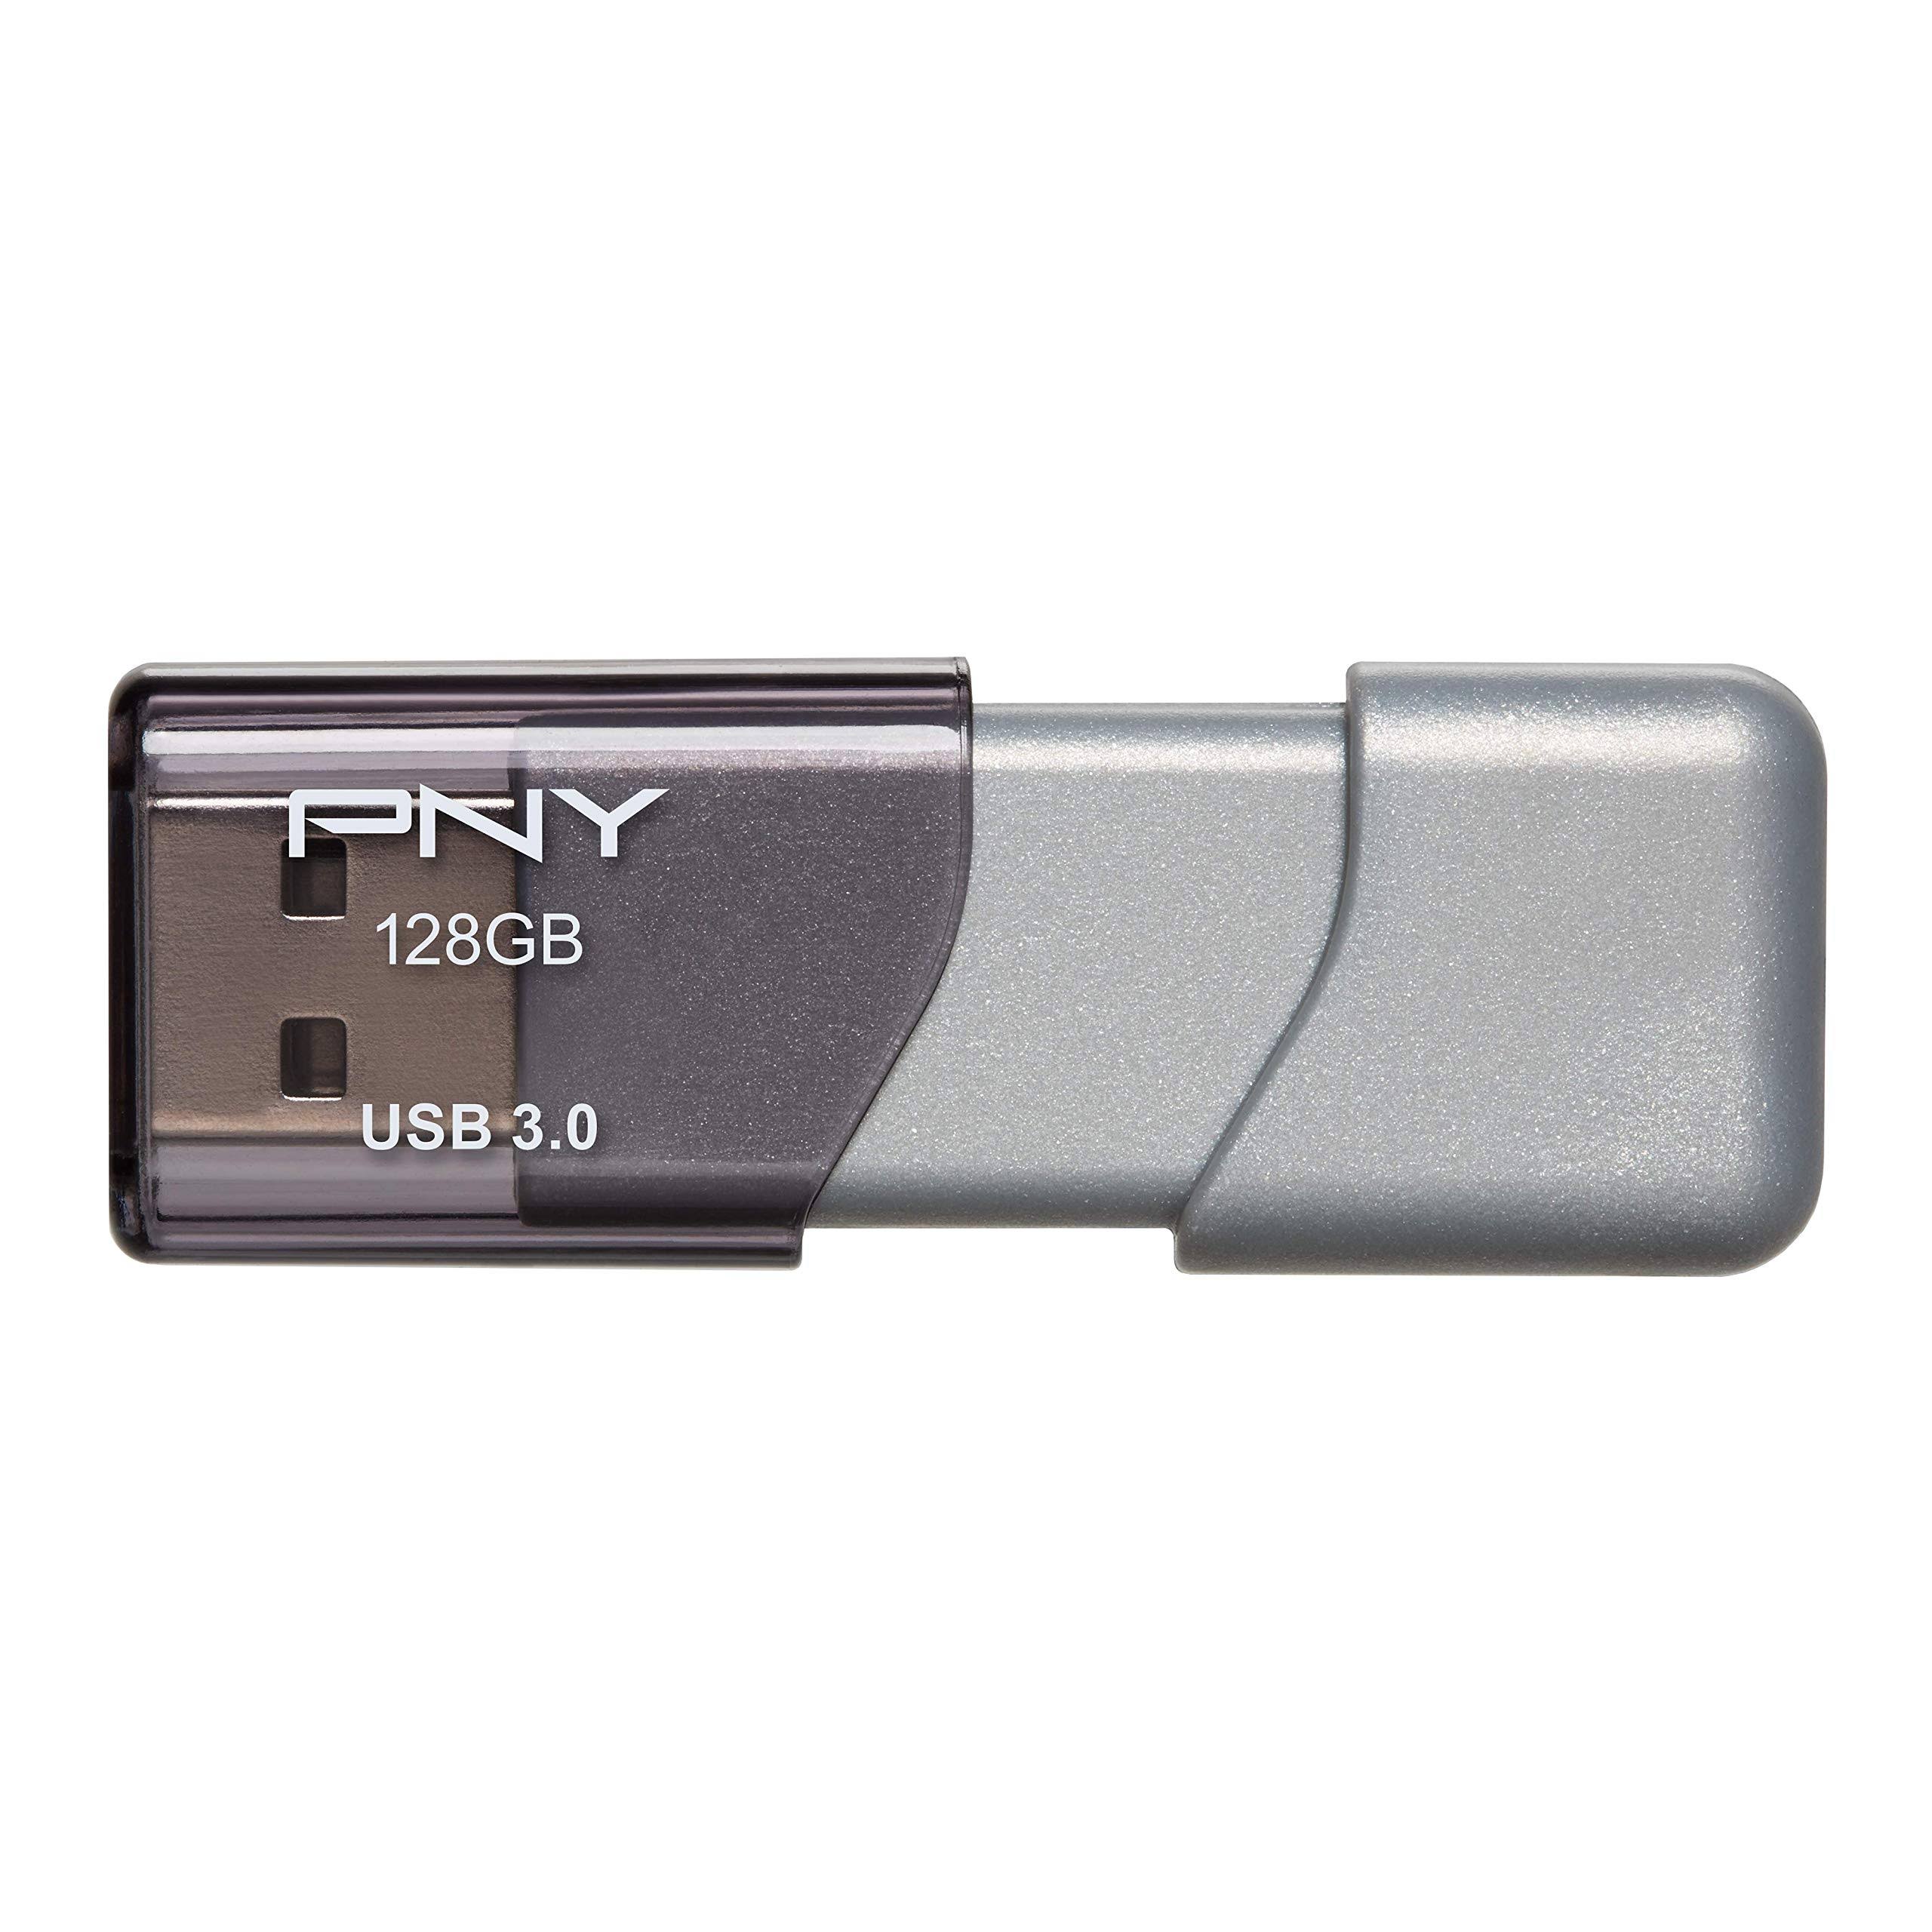 PNY Turbo Usb 3.0 Flash Drive - 128GB